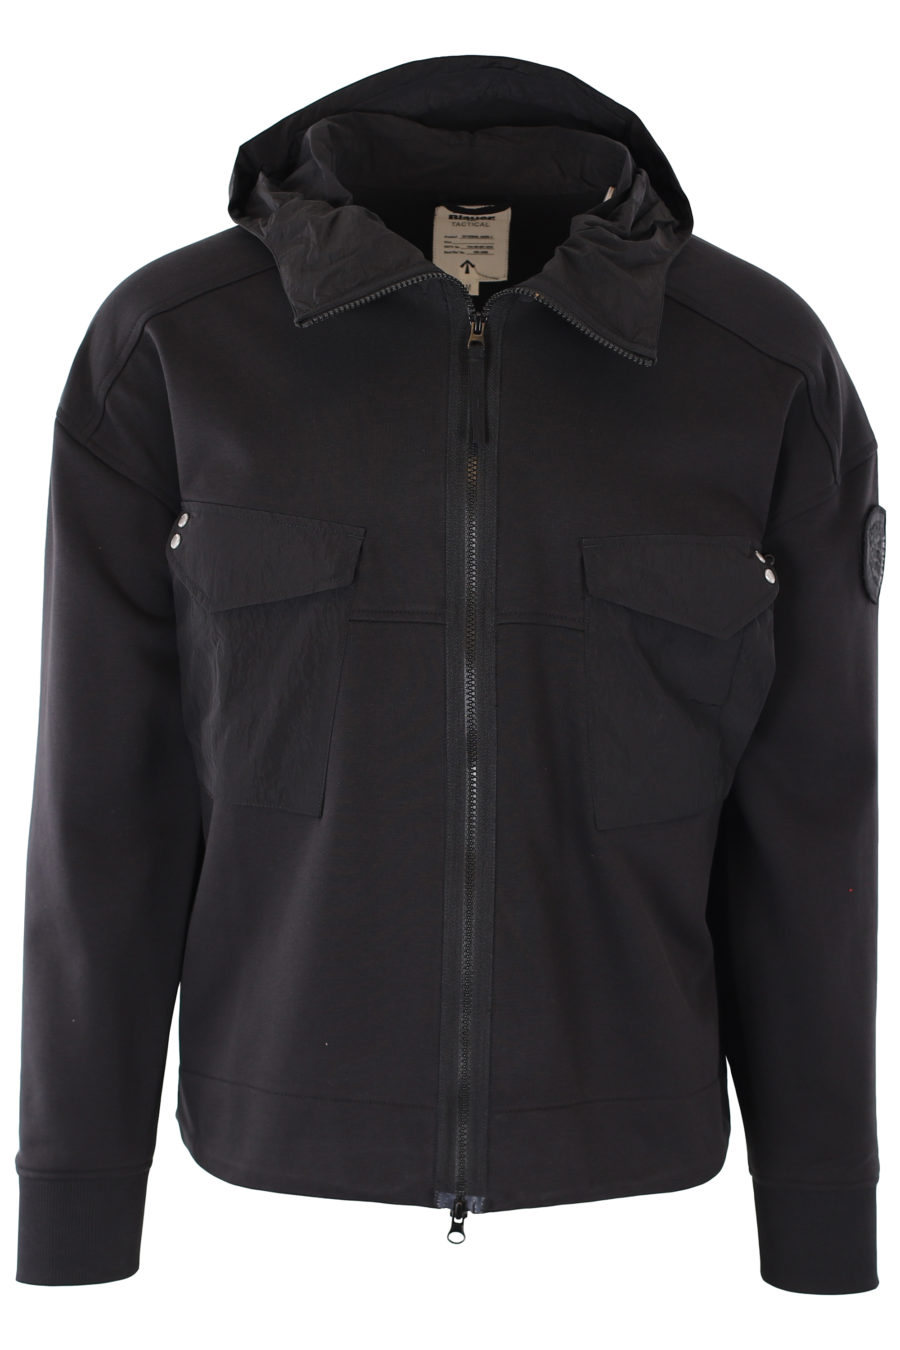 Veste de survêtement noire avec capuche et poches - IMG 1164